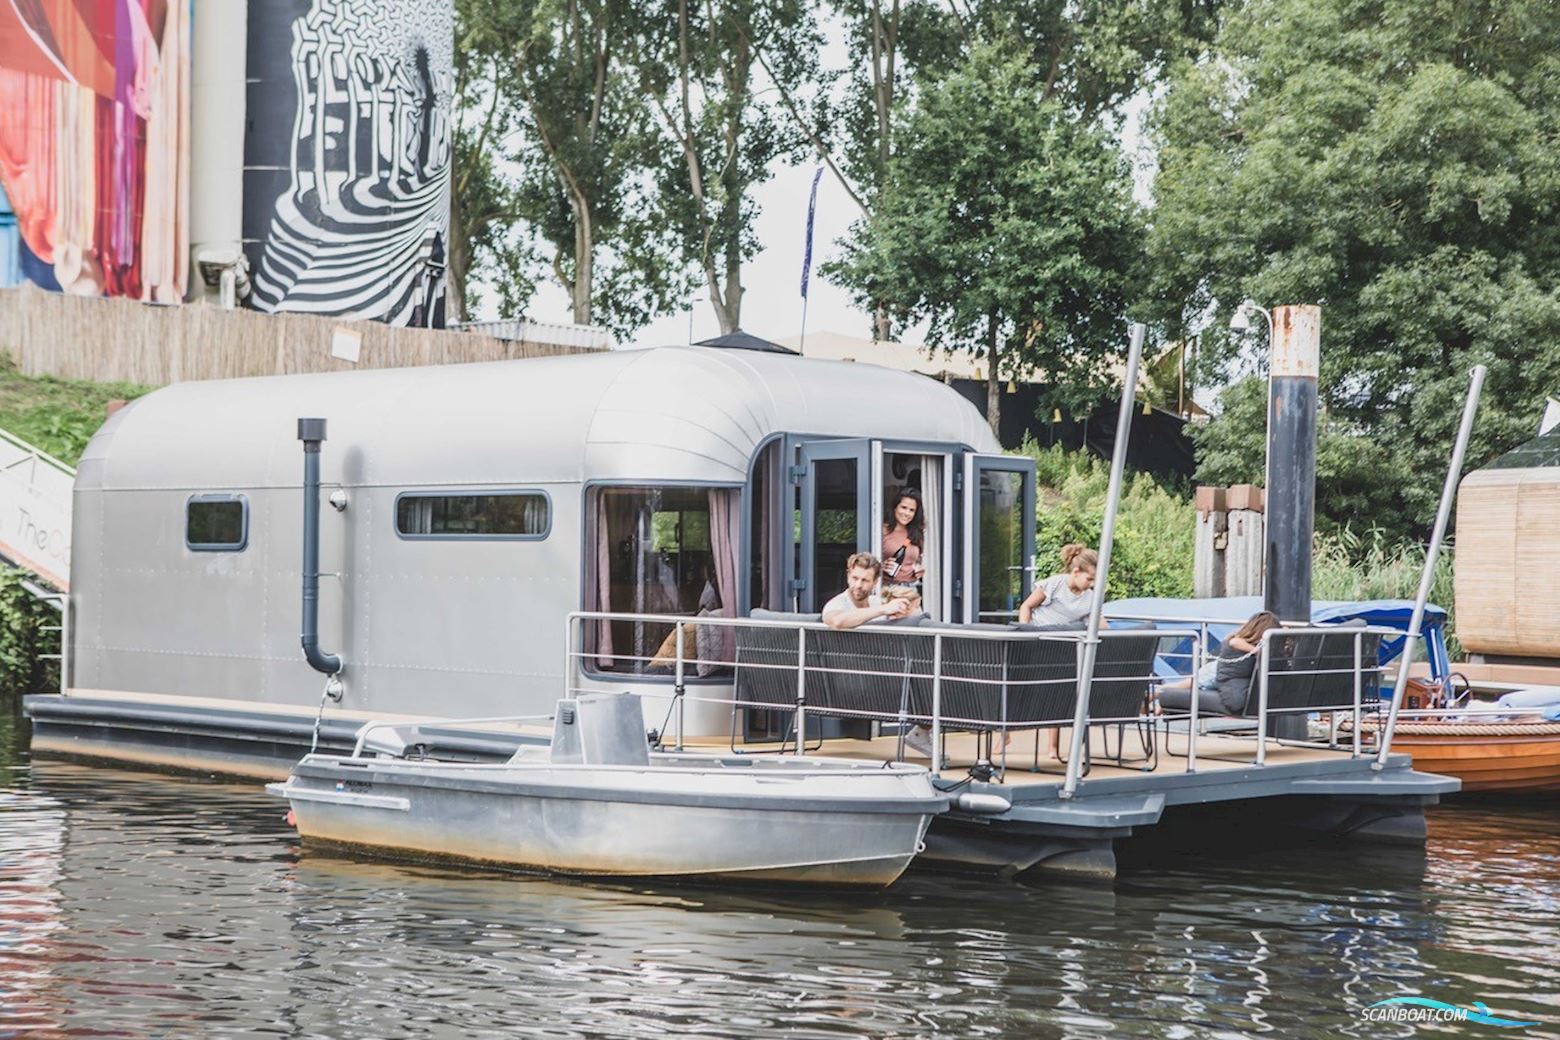 The Coon 1000 Houseboat Huizen aan water 2016, met In Overleg motor, The Netherlands